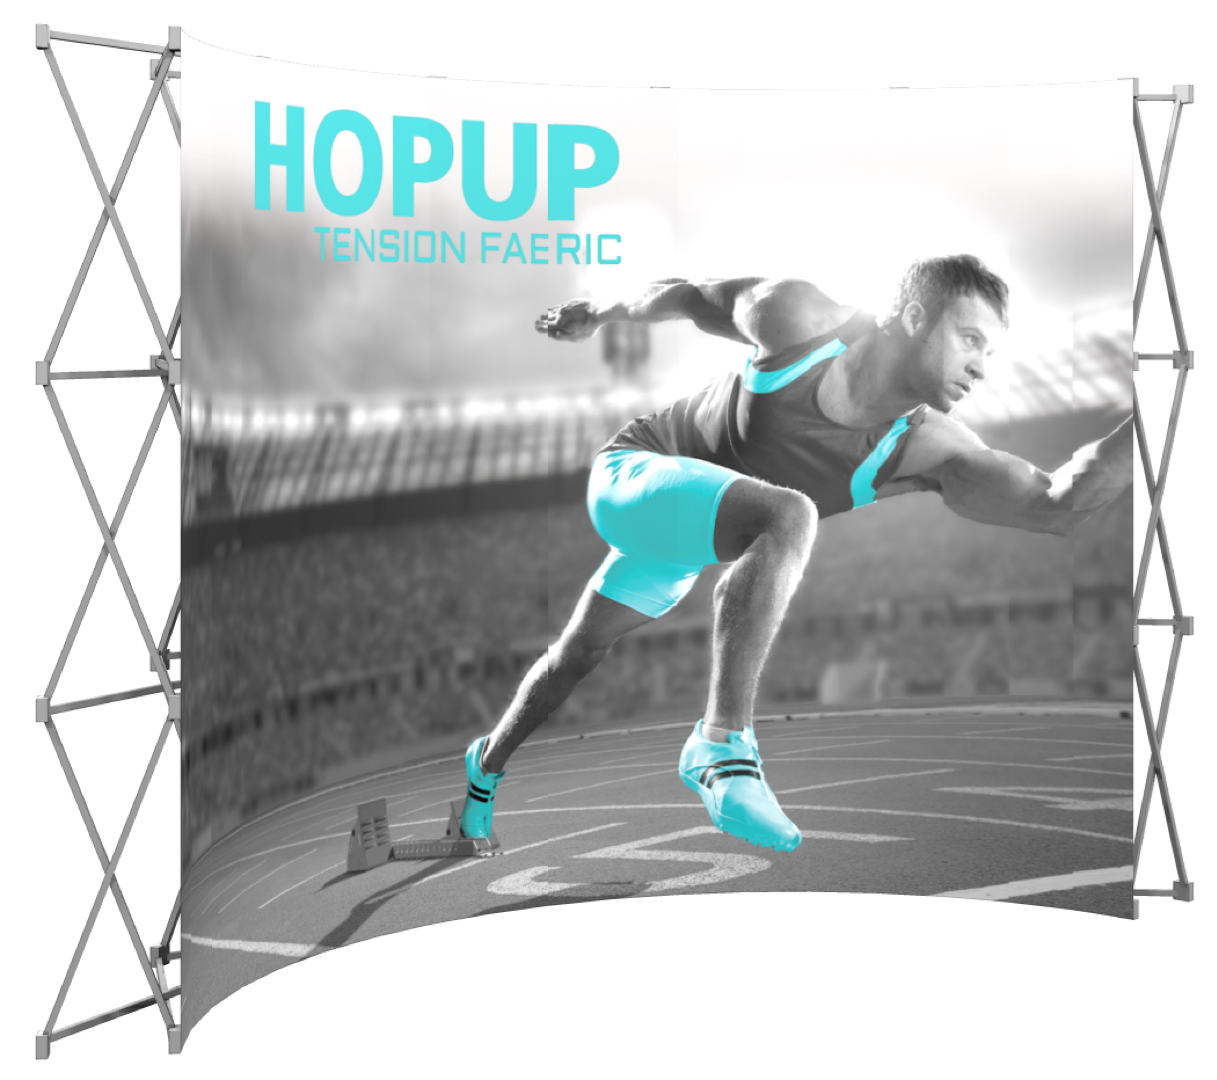 HopUp 5x3 Tension Fabric Display- No Endcaps